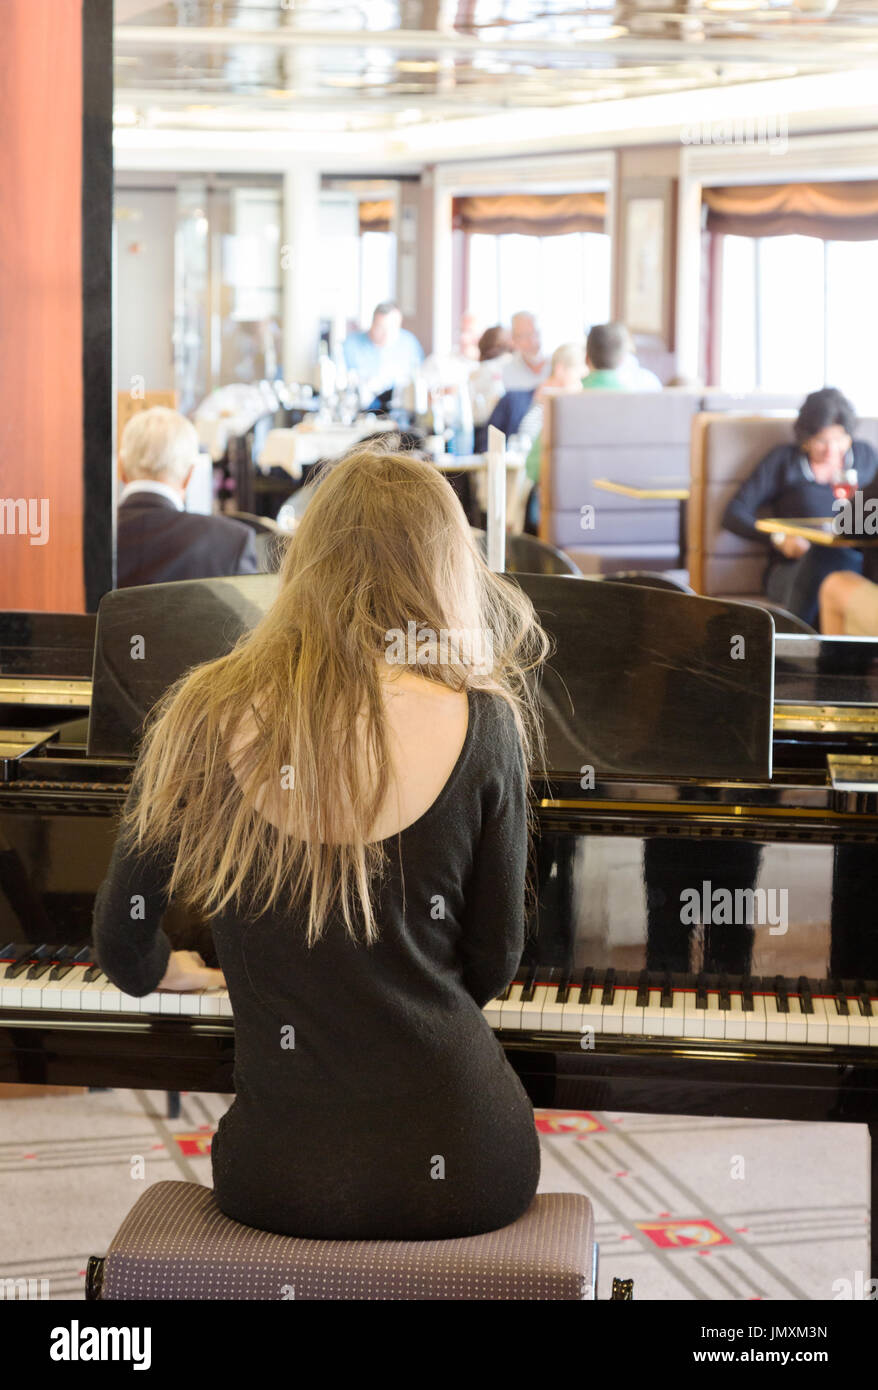 Pianist - Frau Klavier spielen in einer Bar, Rückansicht Stockfoto